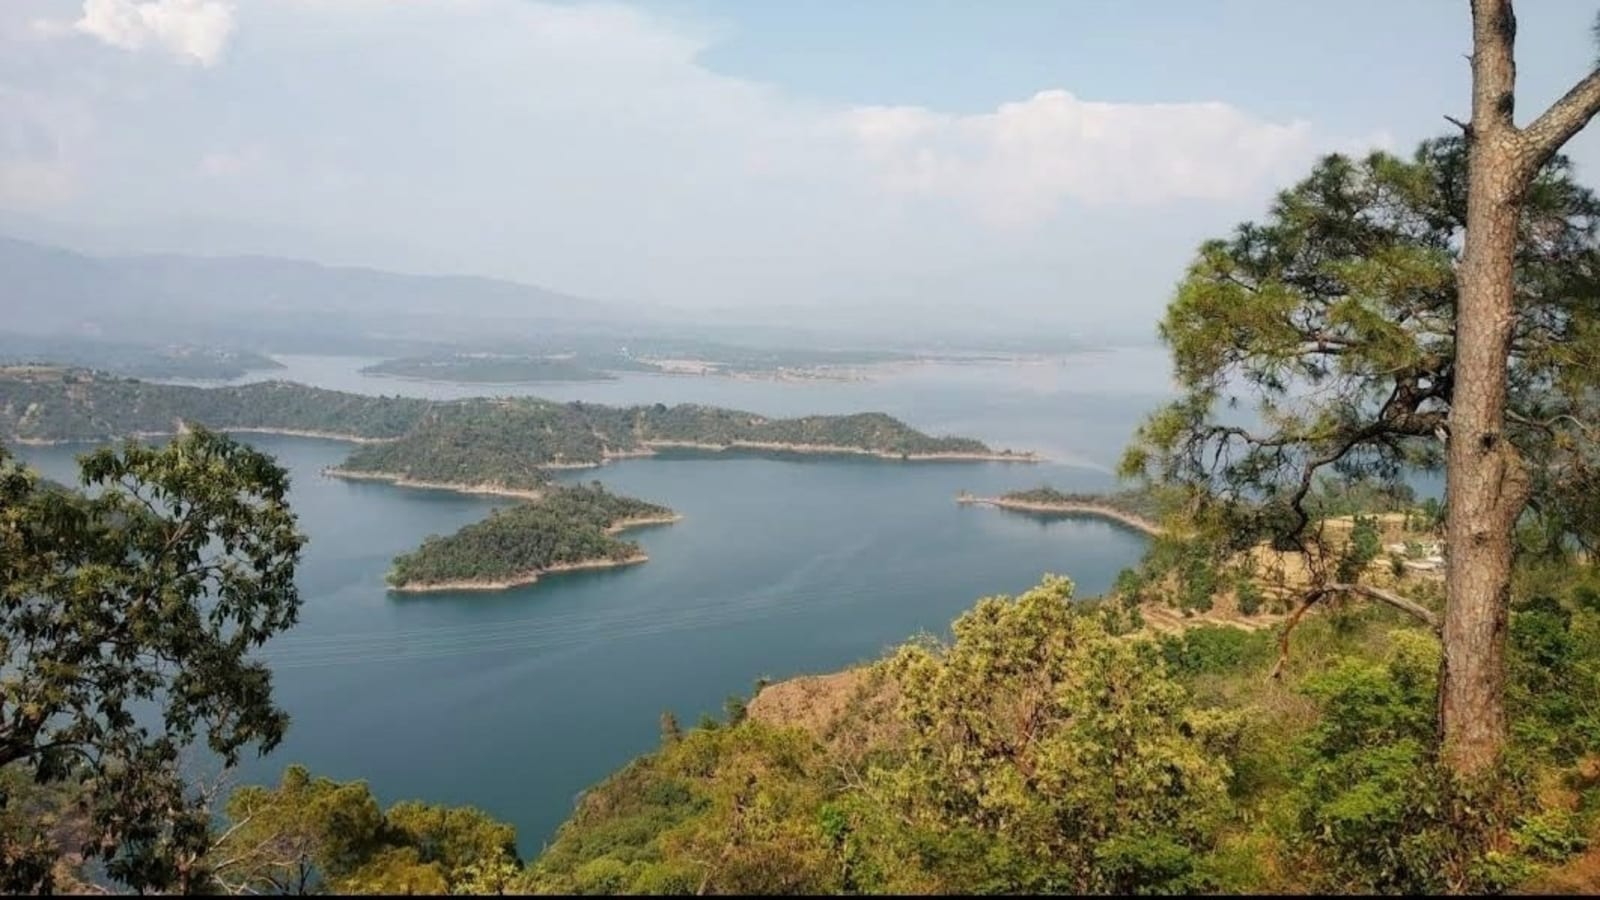 Punjab to develop Ranjit Sagar Lake in Pathankot as tourist destination